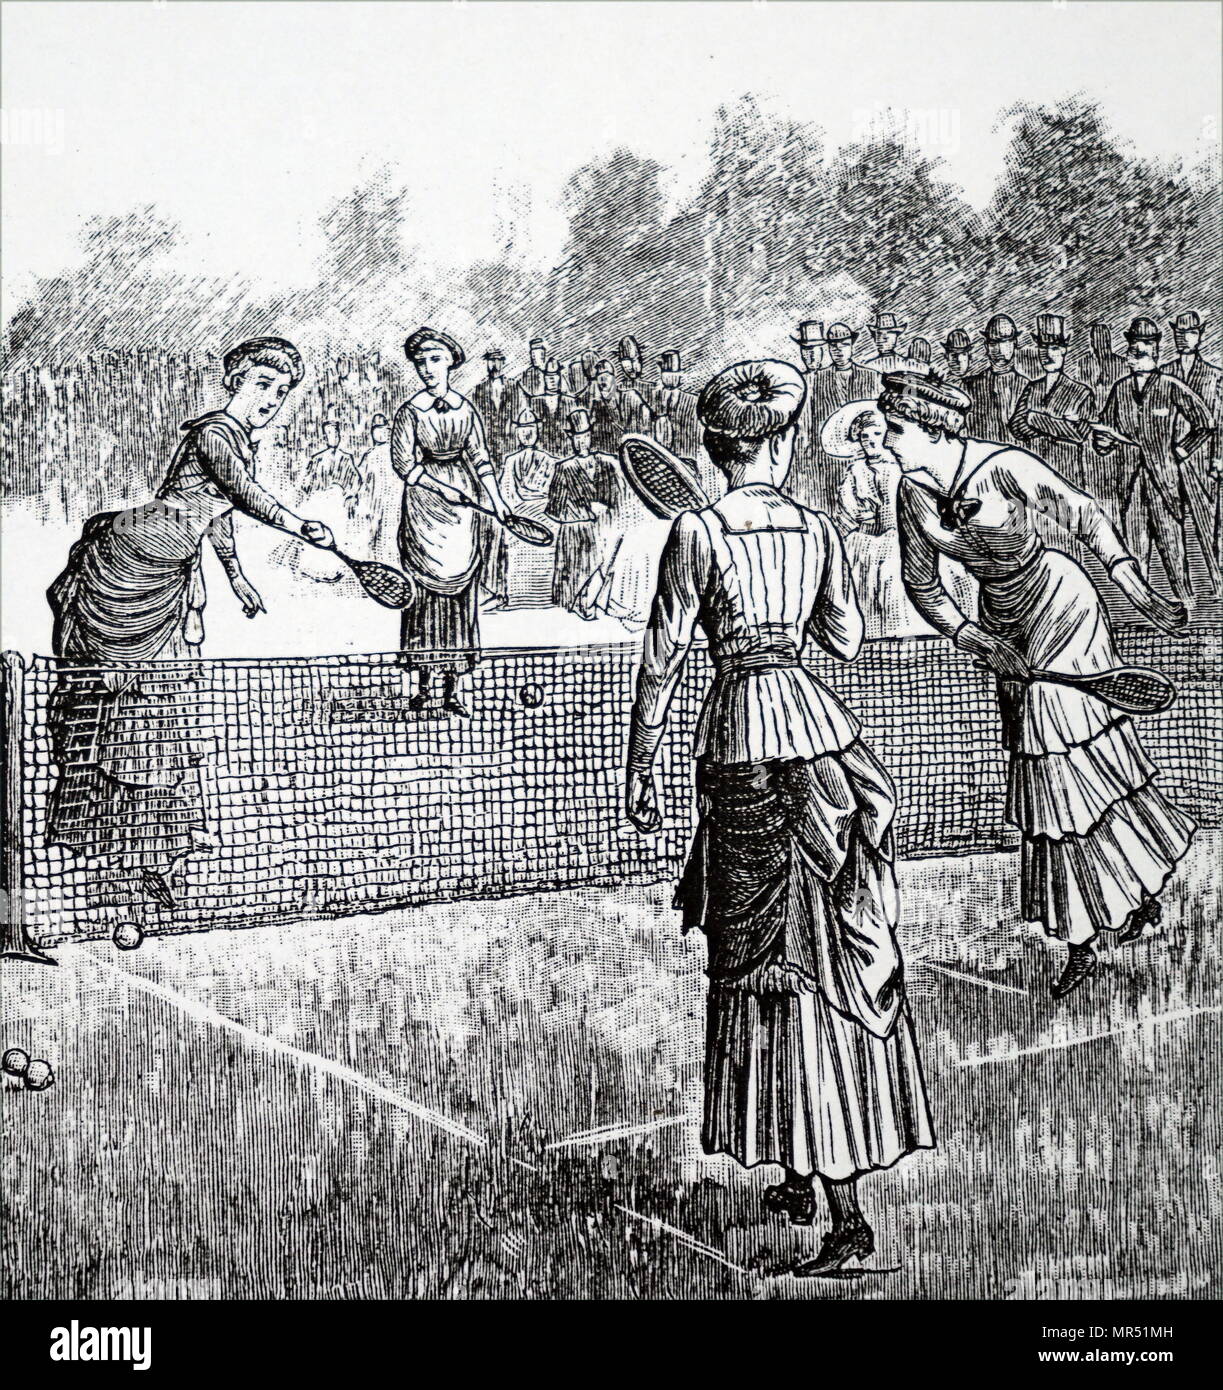 Abbildung: Darstellung der Jungen Damen ein Spiel der Lawn Tennis. Vom 19. Jahrhundert Stockfoto